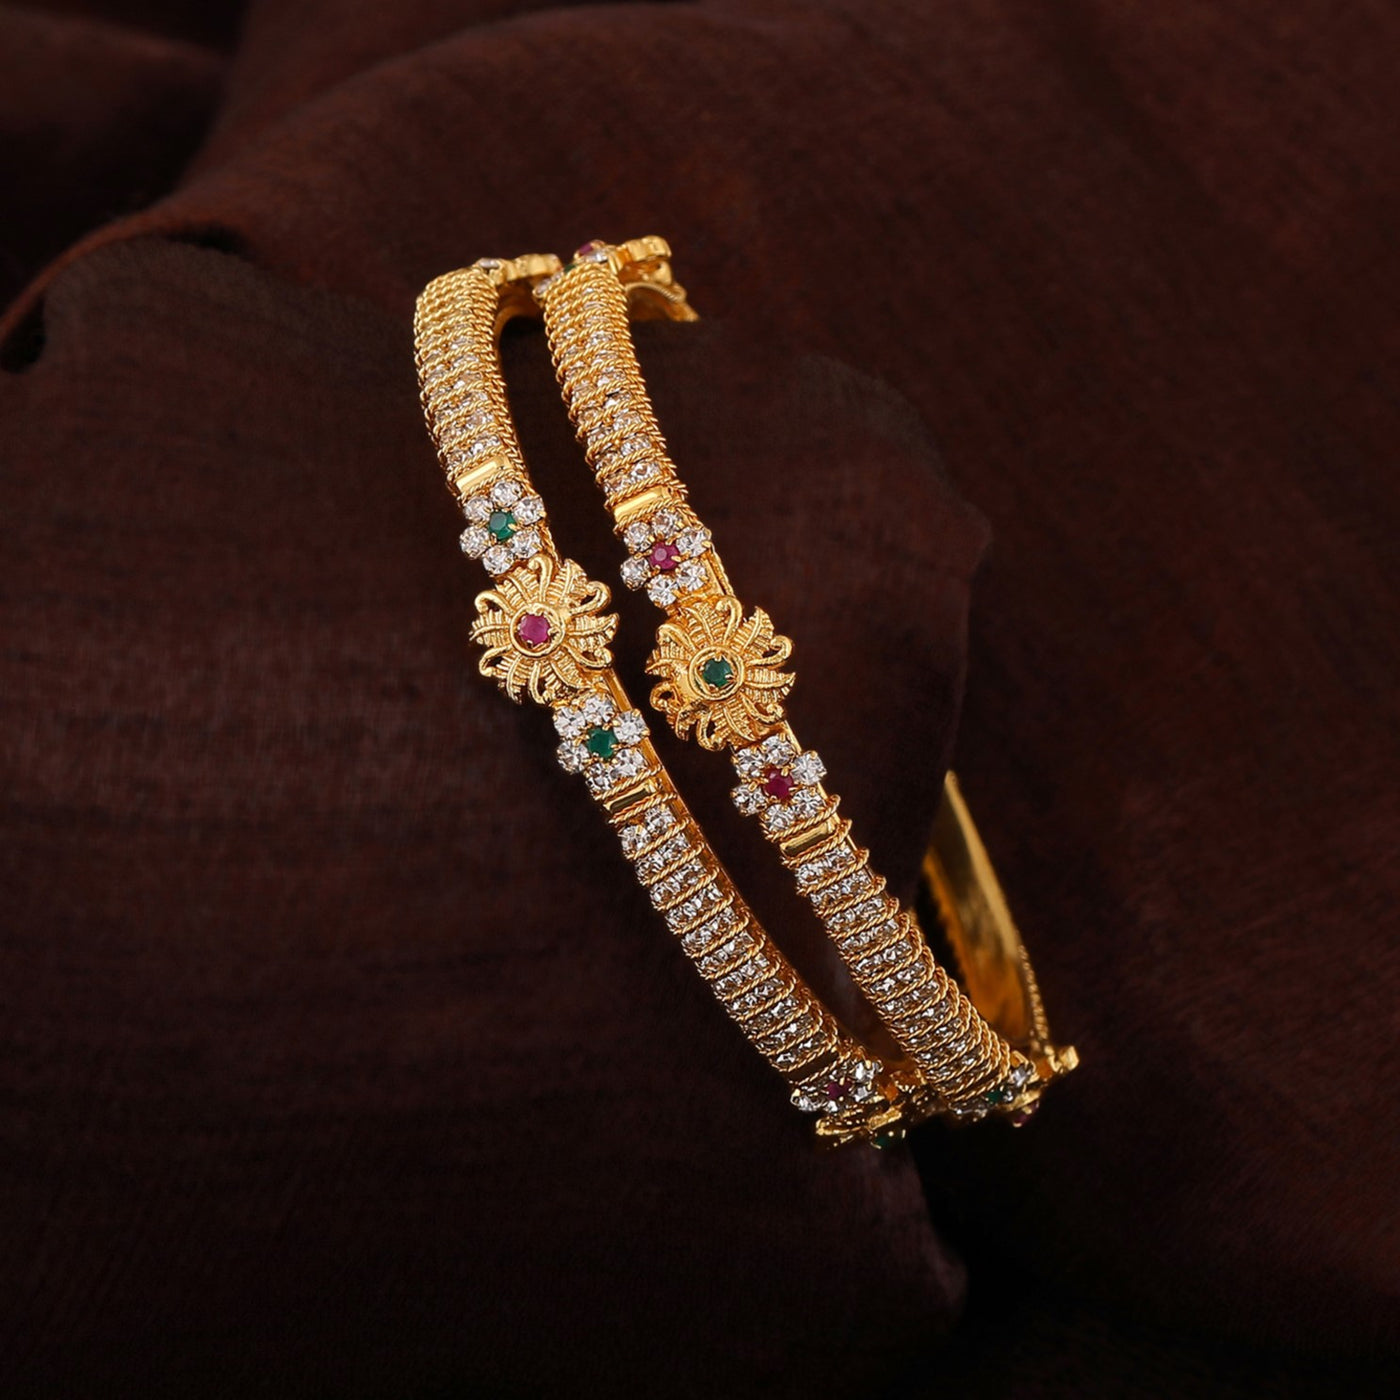 Estele Gold Plated Sparkling Flower Designer Bangle Set with Crystals for Women